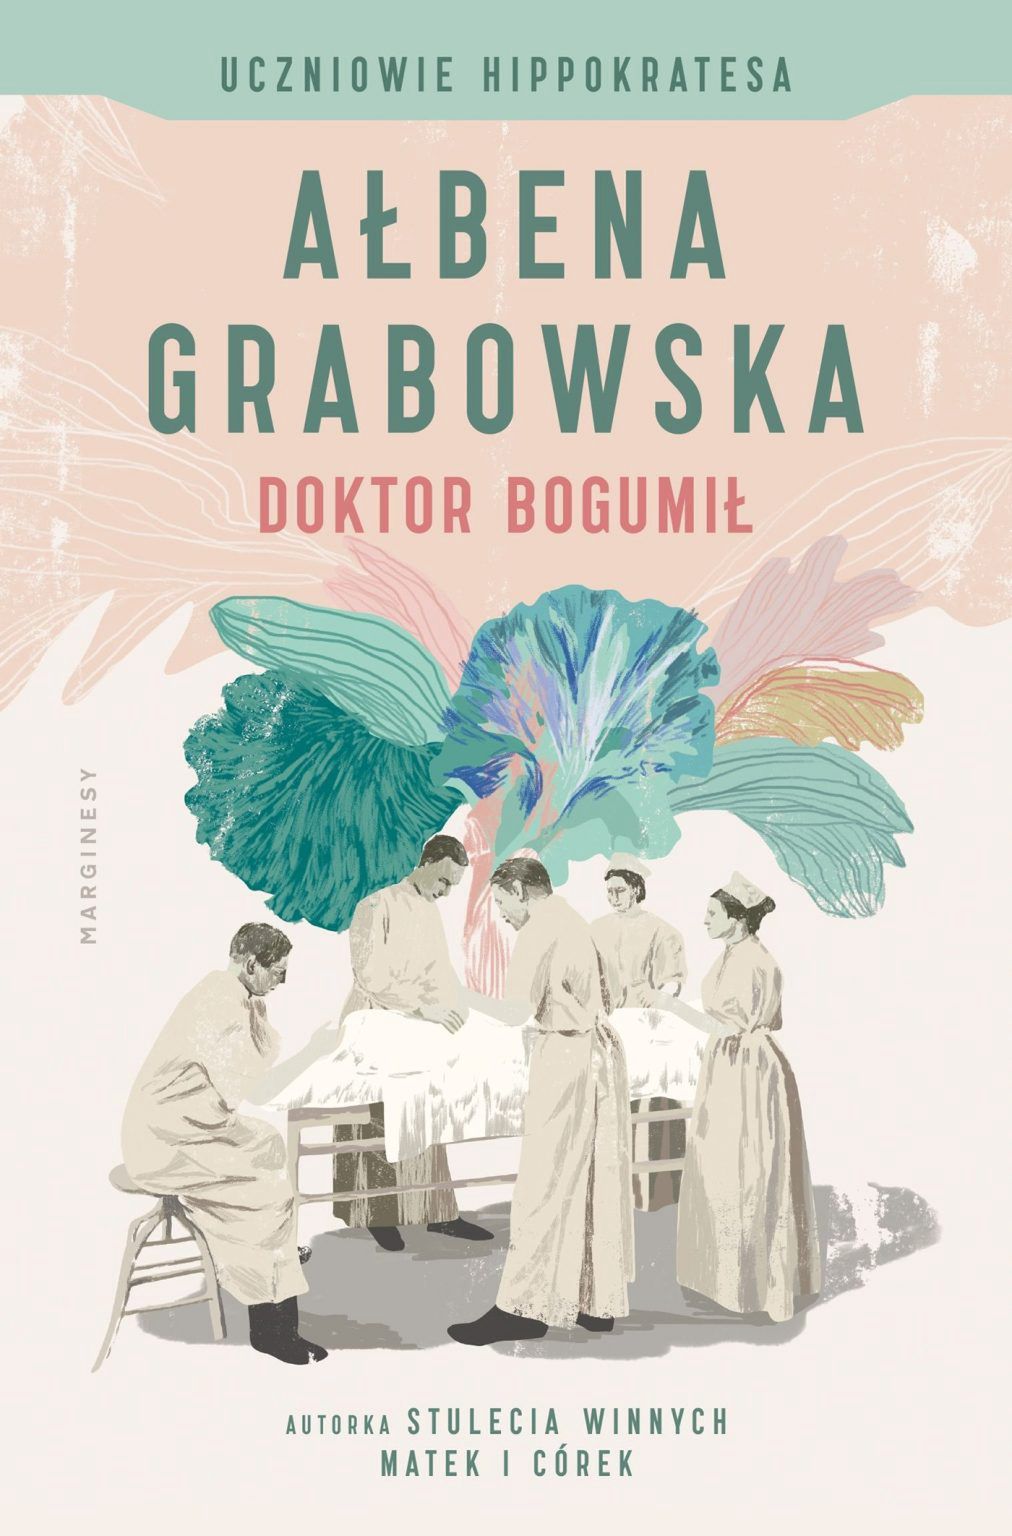 Inspiracją dla tego artykułu stała się nowa powieść Ałbeny Grabowskiej pod tytułem Doktor Bogumił. To historia Bogumiła Korzyńskiego, który pragnie zostać ginekologiem i tym samym pomóc kobietom takim jak jego żona, która kolejny poród niemalże przypłaca życiem.